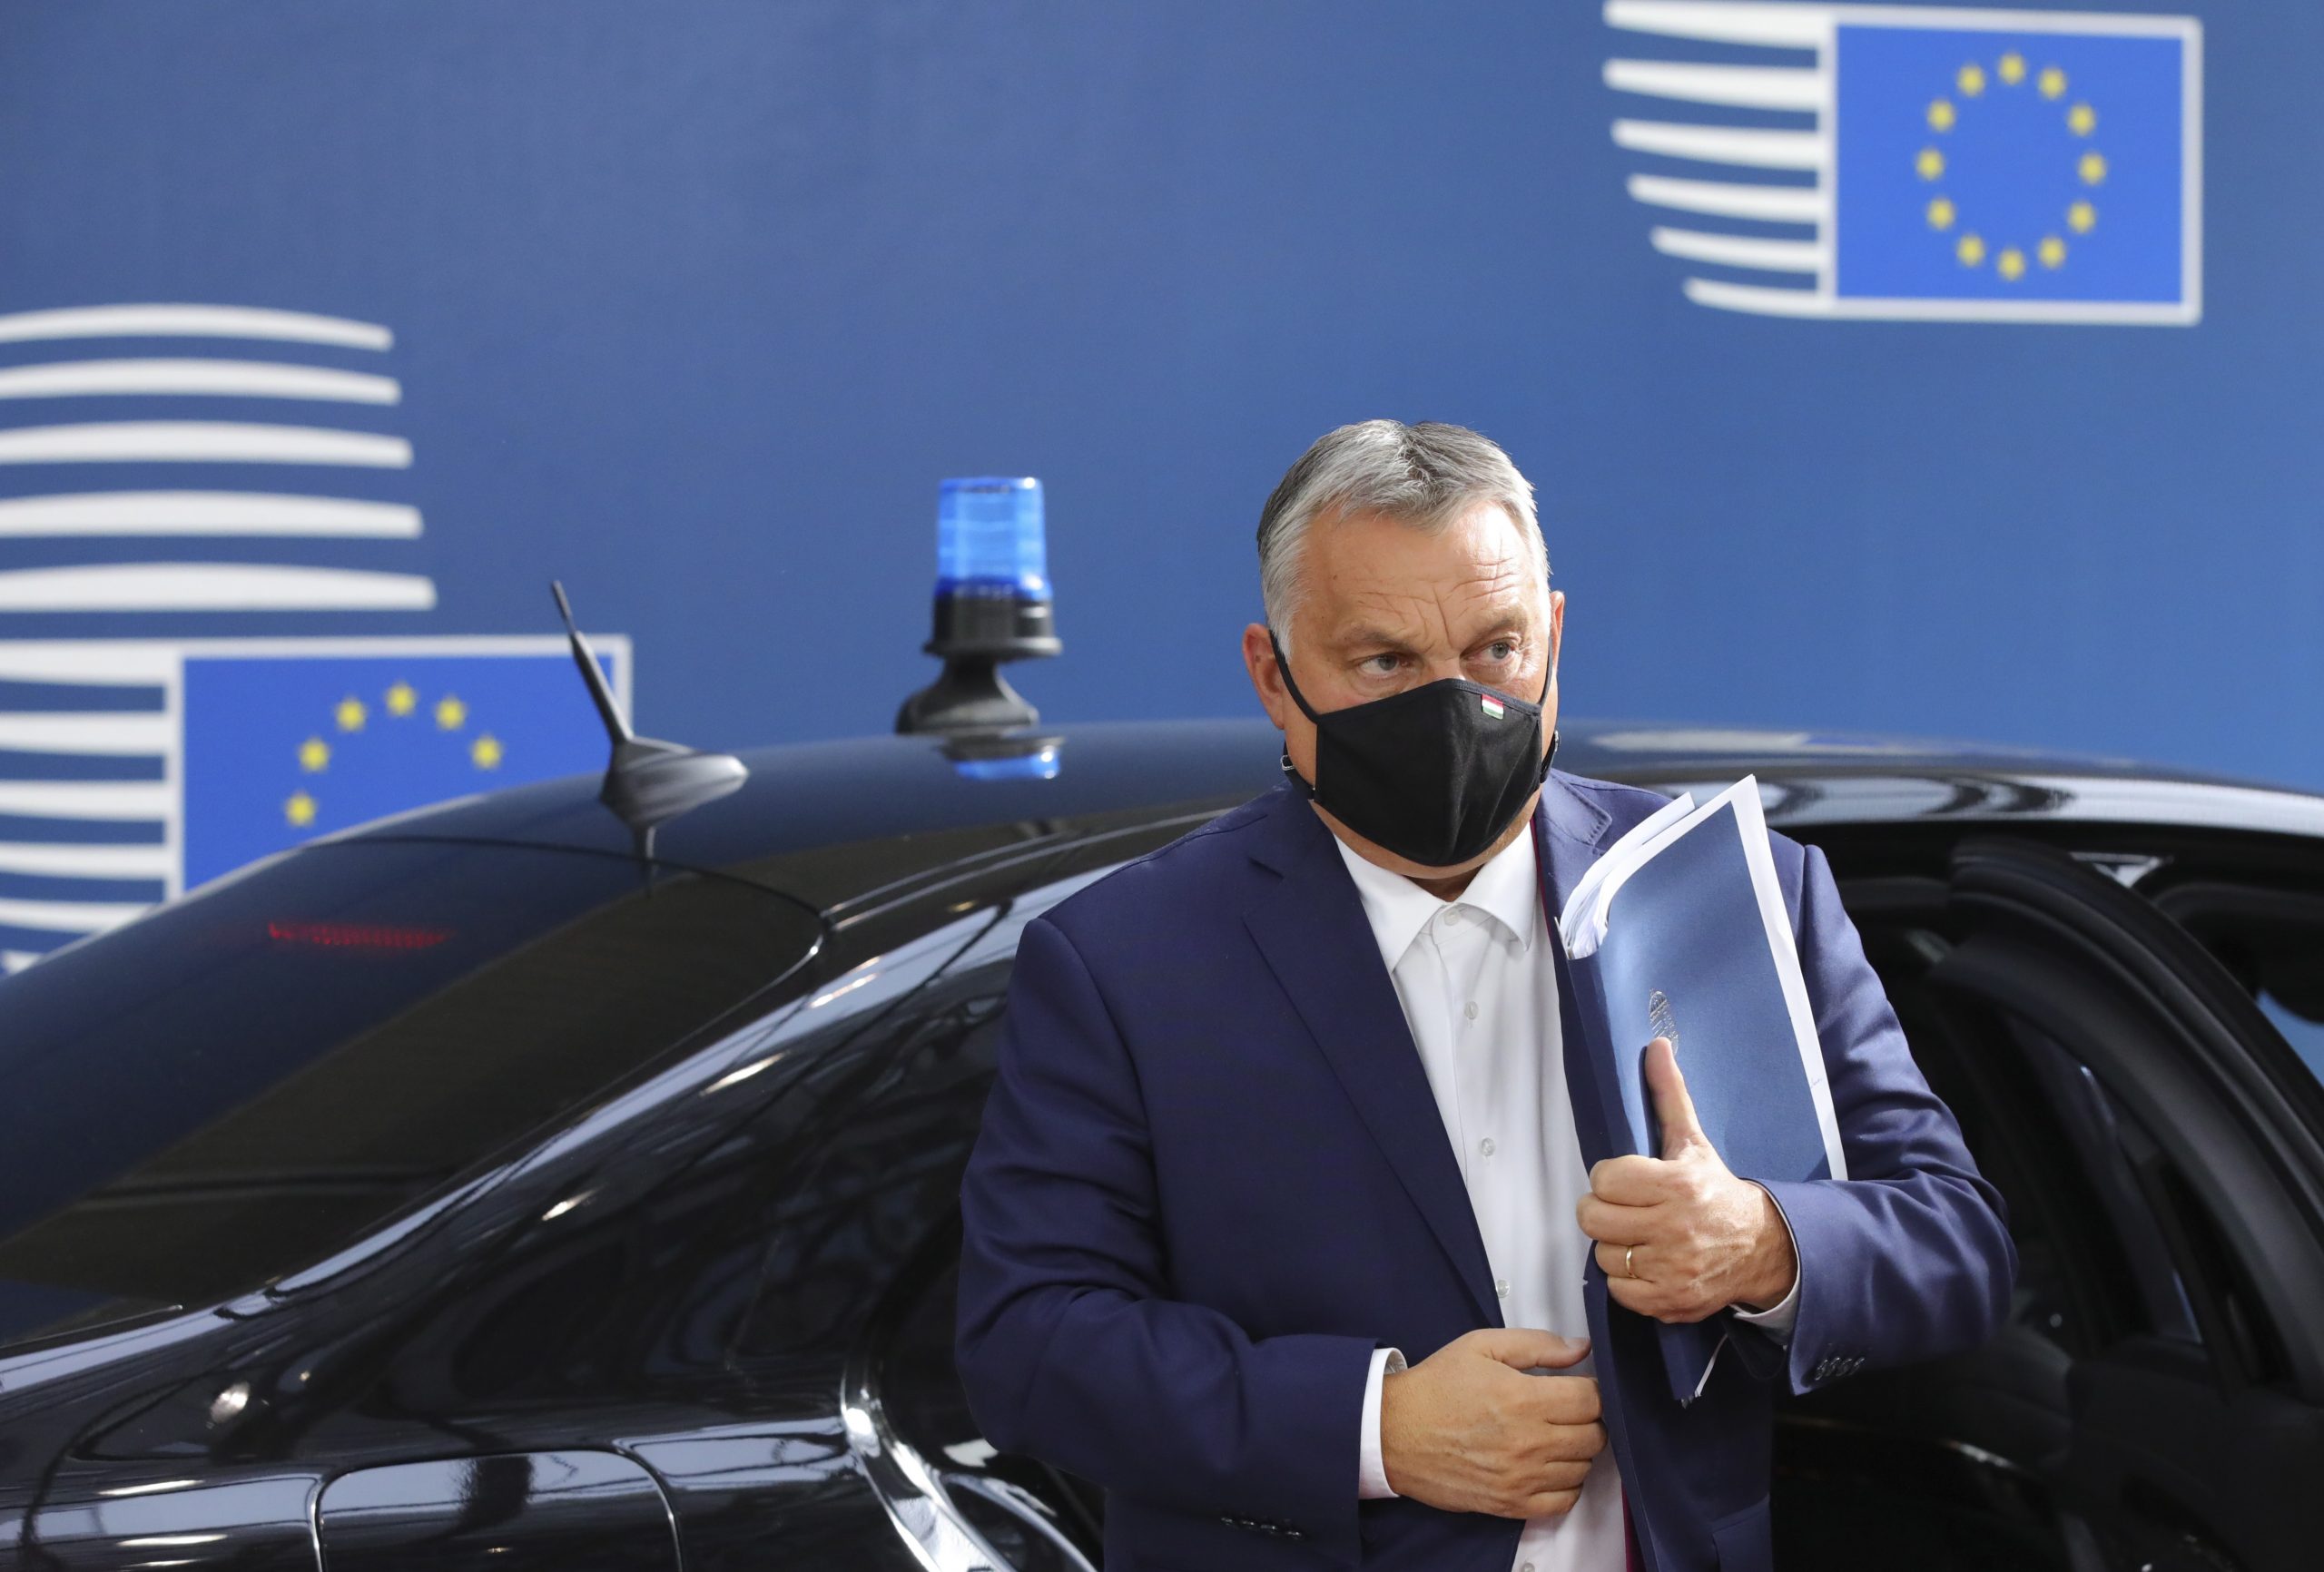 De Hongaarse premier Viktor Orban tijdens een Europese top in Brussel op 15 oktober 2020.